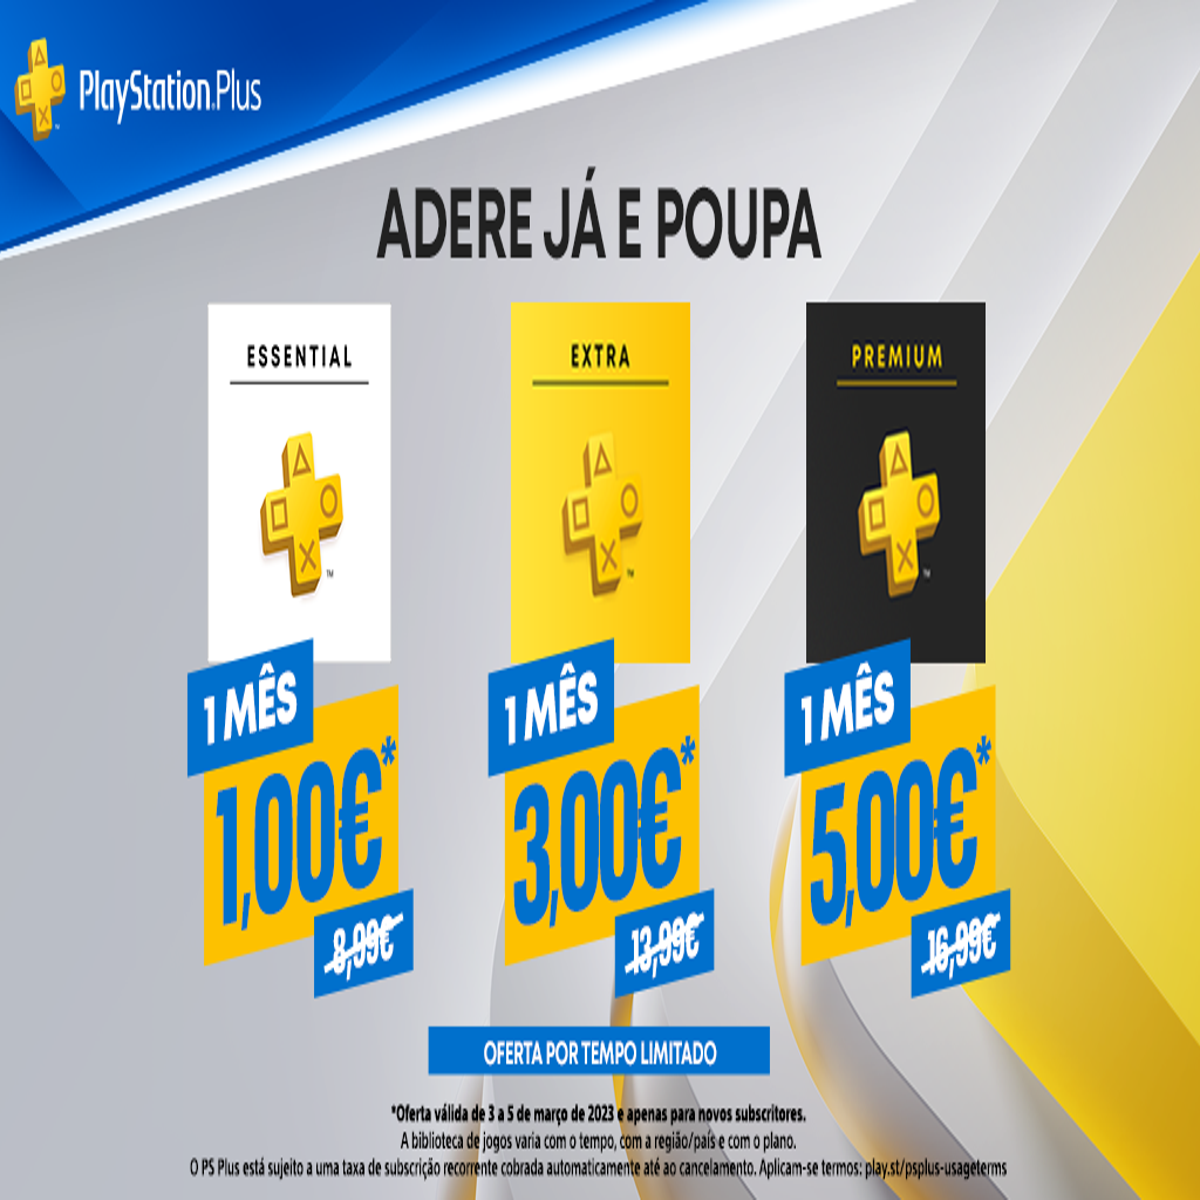 Atenção aos novos preços do PS Plus no Brasil 🤡: 🔹 PS Plus Essential